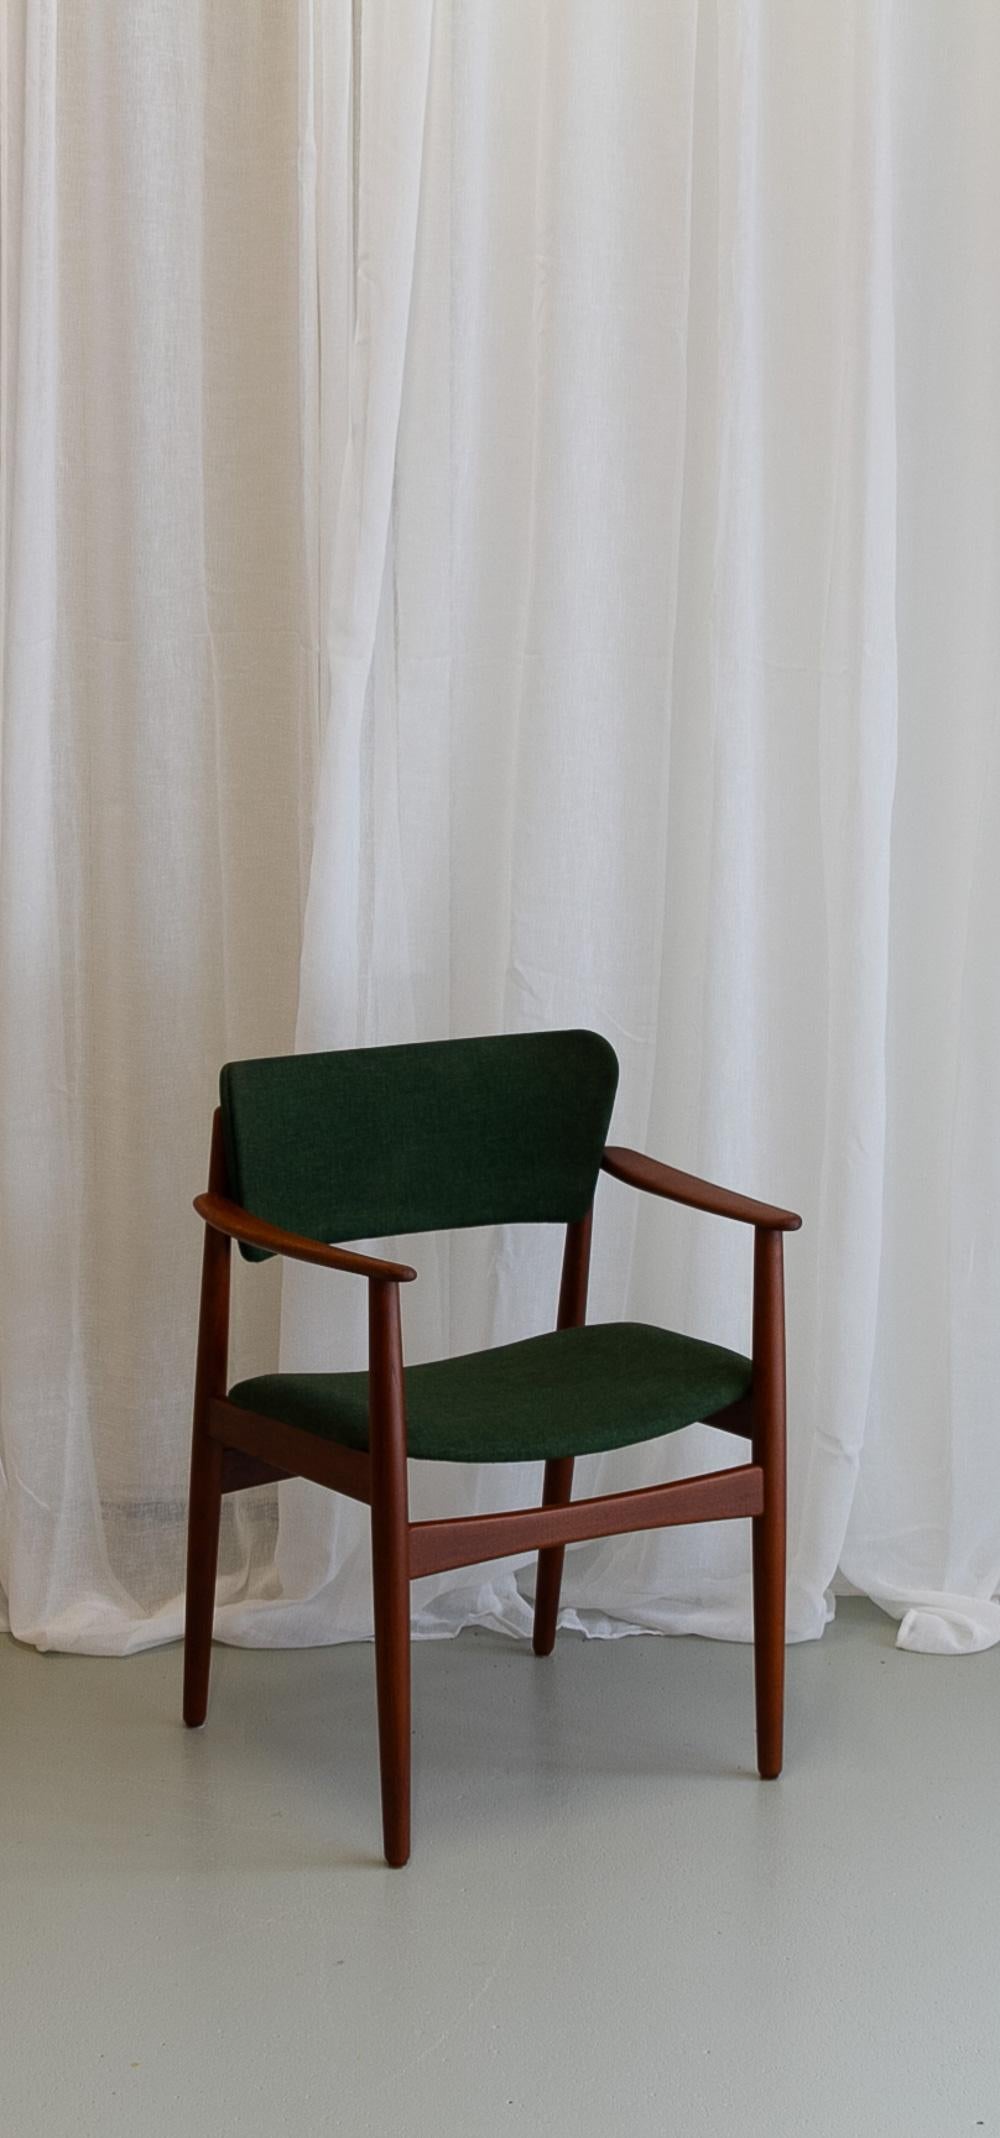 Fauteuil moderne danois en teck avec laine verte, années 1960.

Fauteuil élégant et sculptural en teck massif avec des pieds ronds et effilés. L'assise et le dossier incurvé sont garnis de laine verte d'origine.
Fabricant inconnu, mais le design est